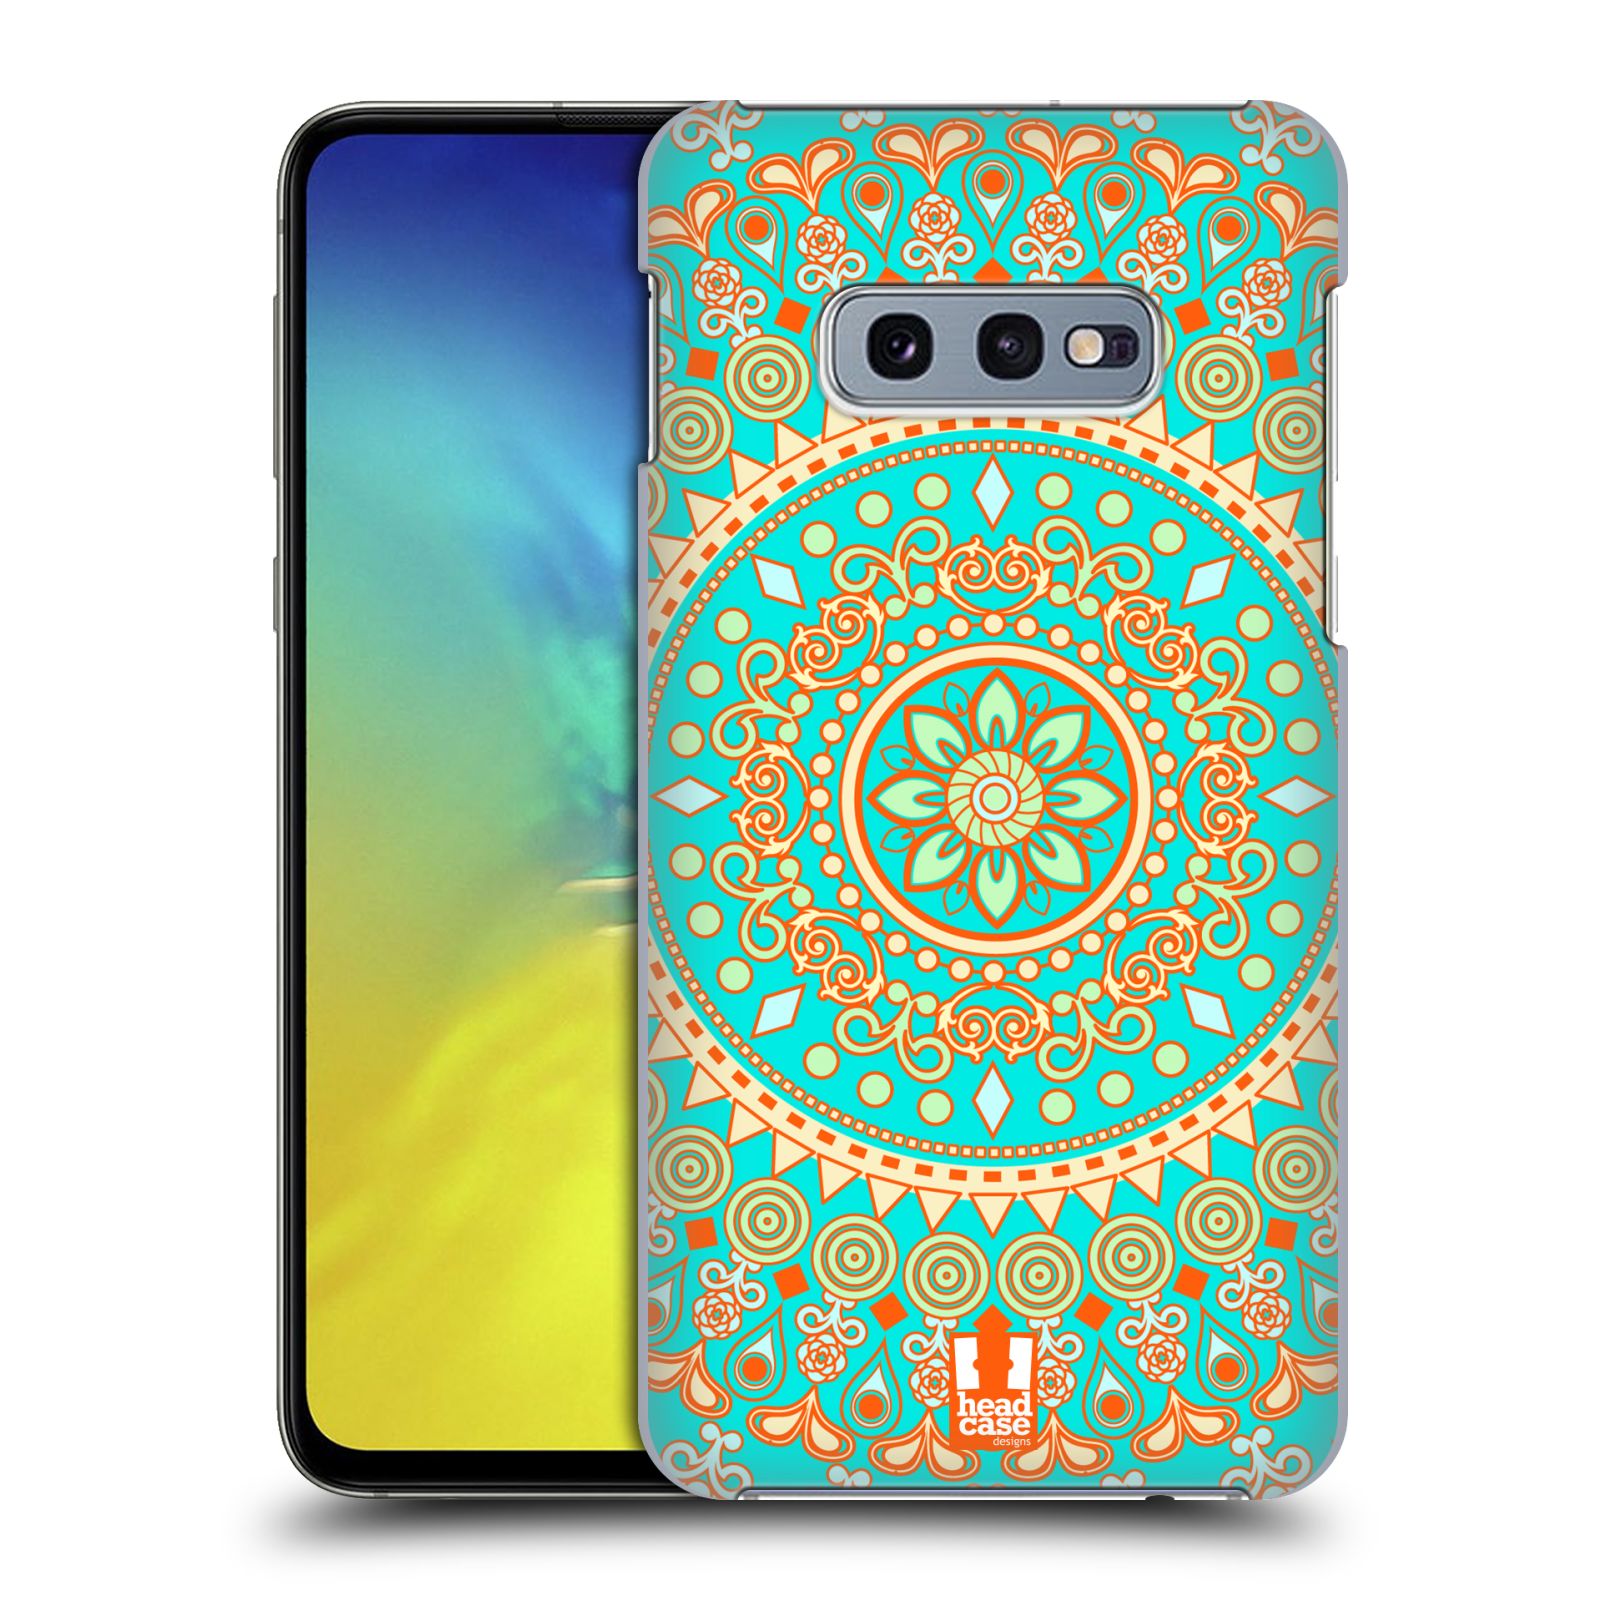 Pouzdro na mobil Samsung Galaxy S10e - HEAD CASE - vzor Indie Mandala slunce barevný motiv TYRKYSOVÁ, ZELENÁ